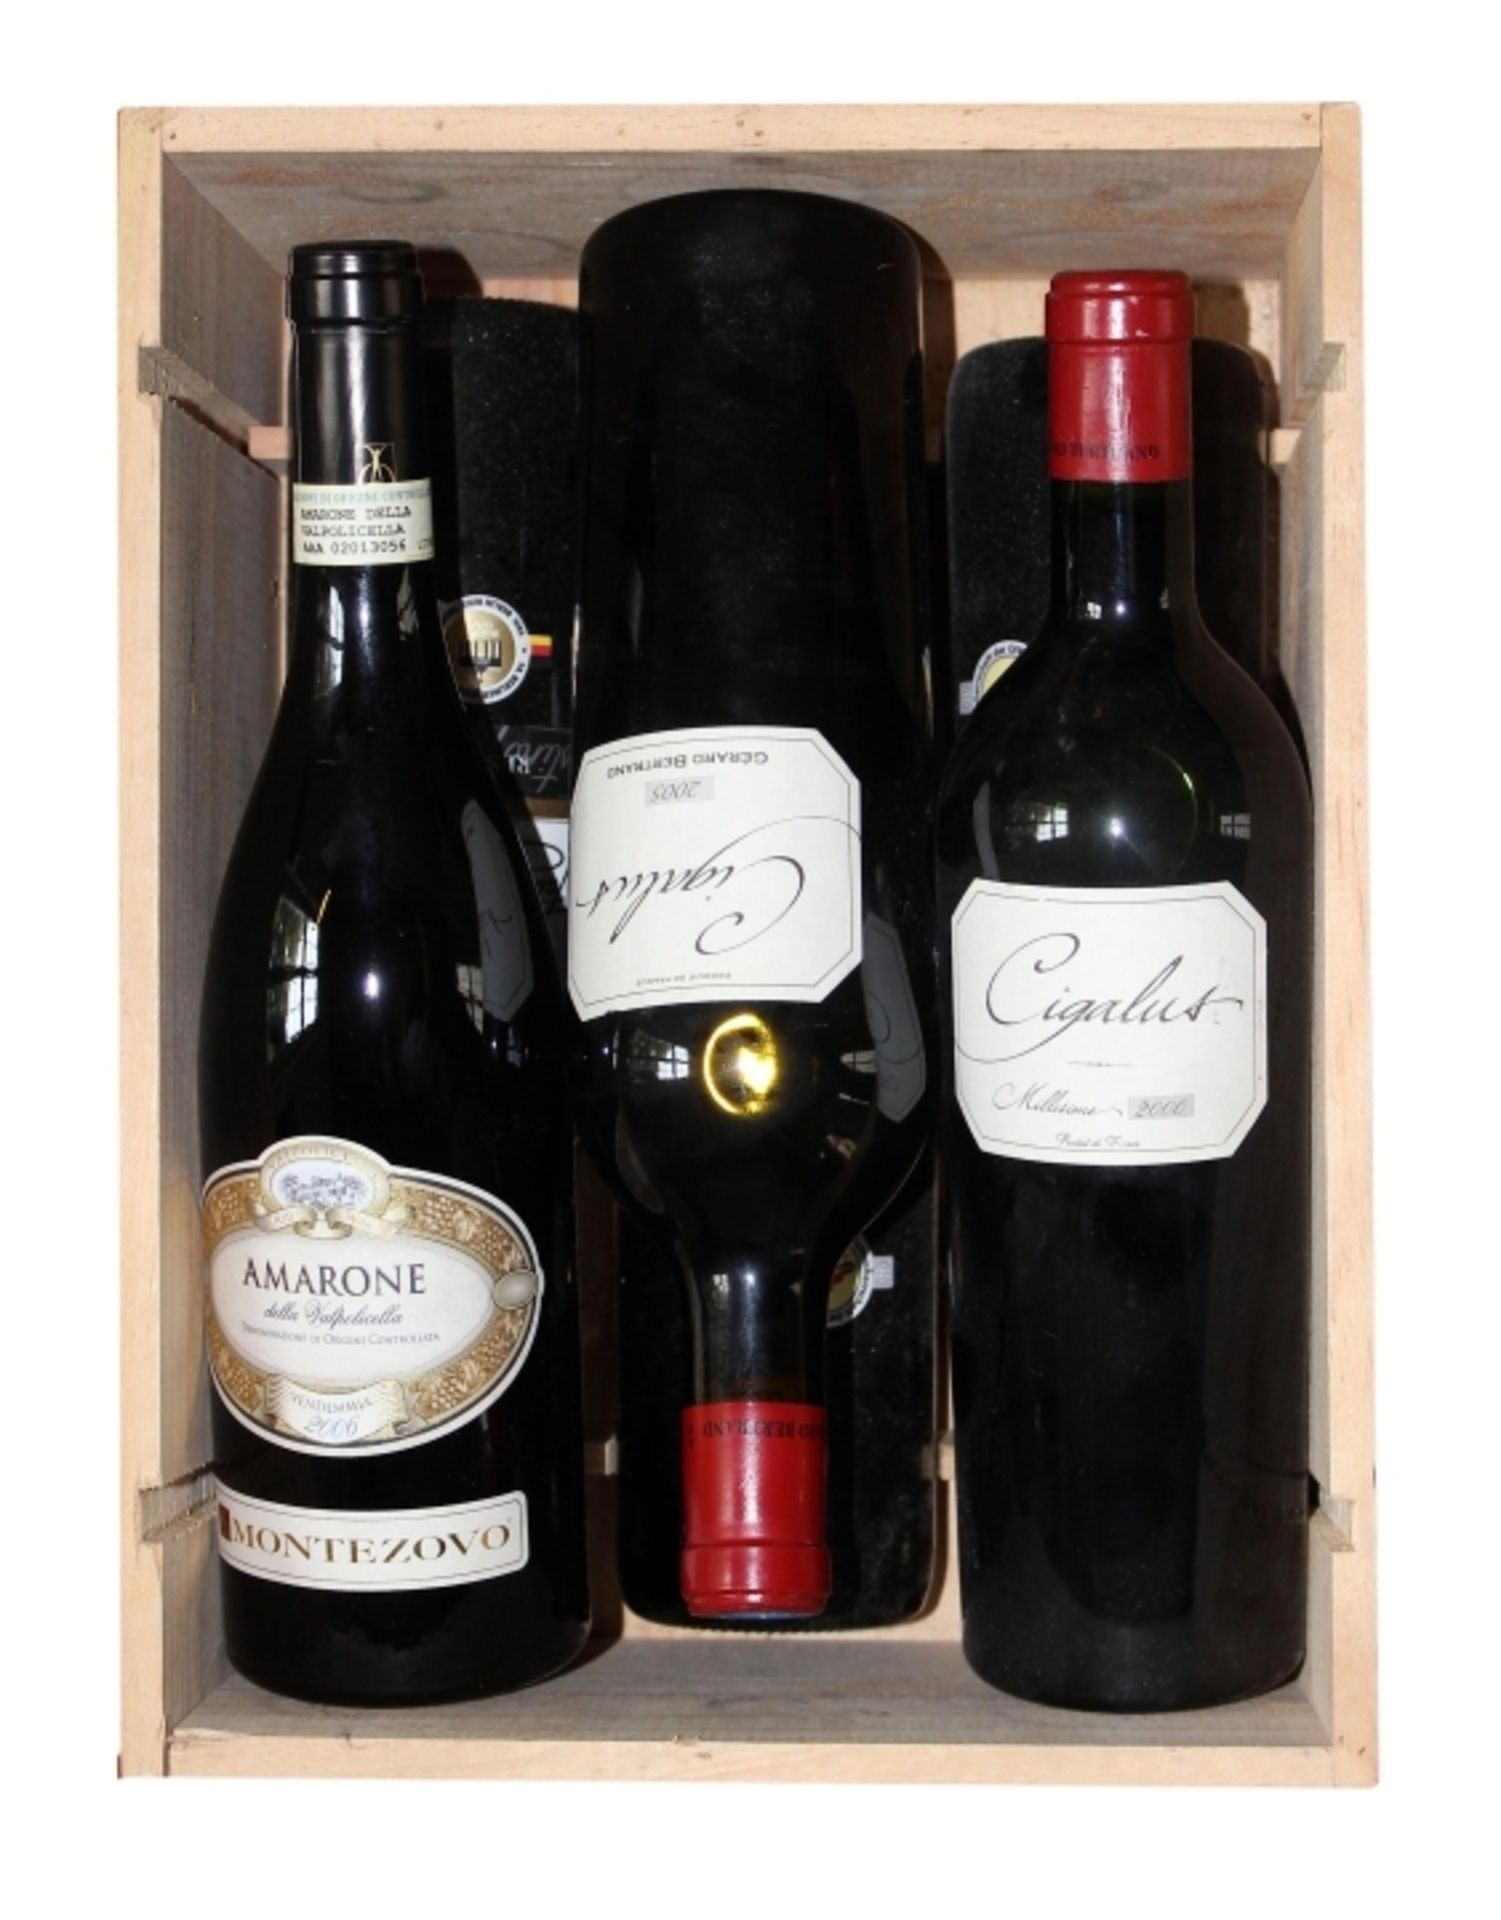 Wein (im Keller gelagert) 1. 1 Flasche - Amarone della Valpolicella, Vendemmia 2006, Monte Zovo 2. 1